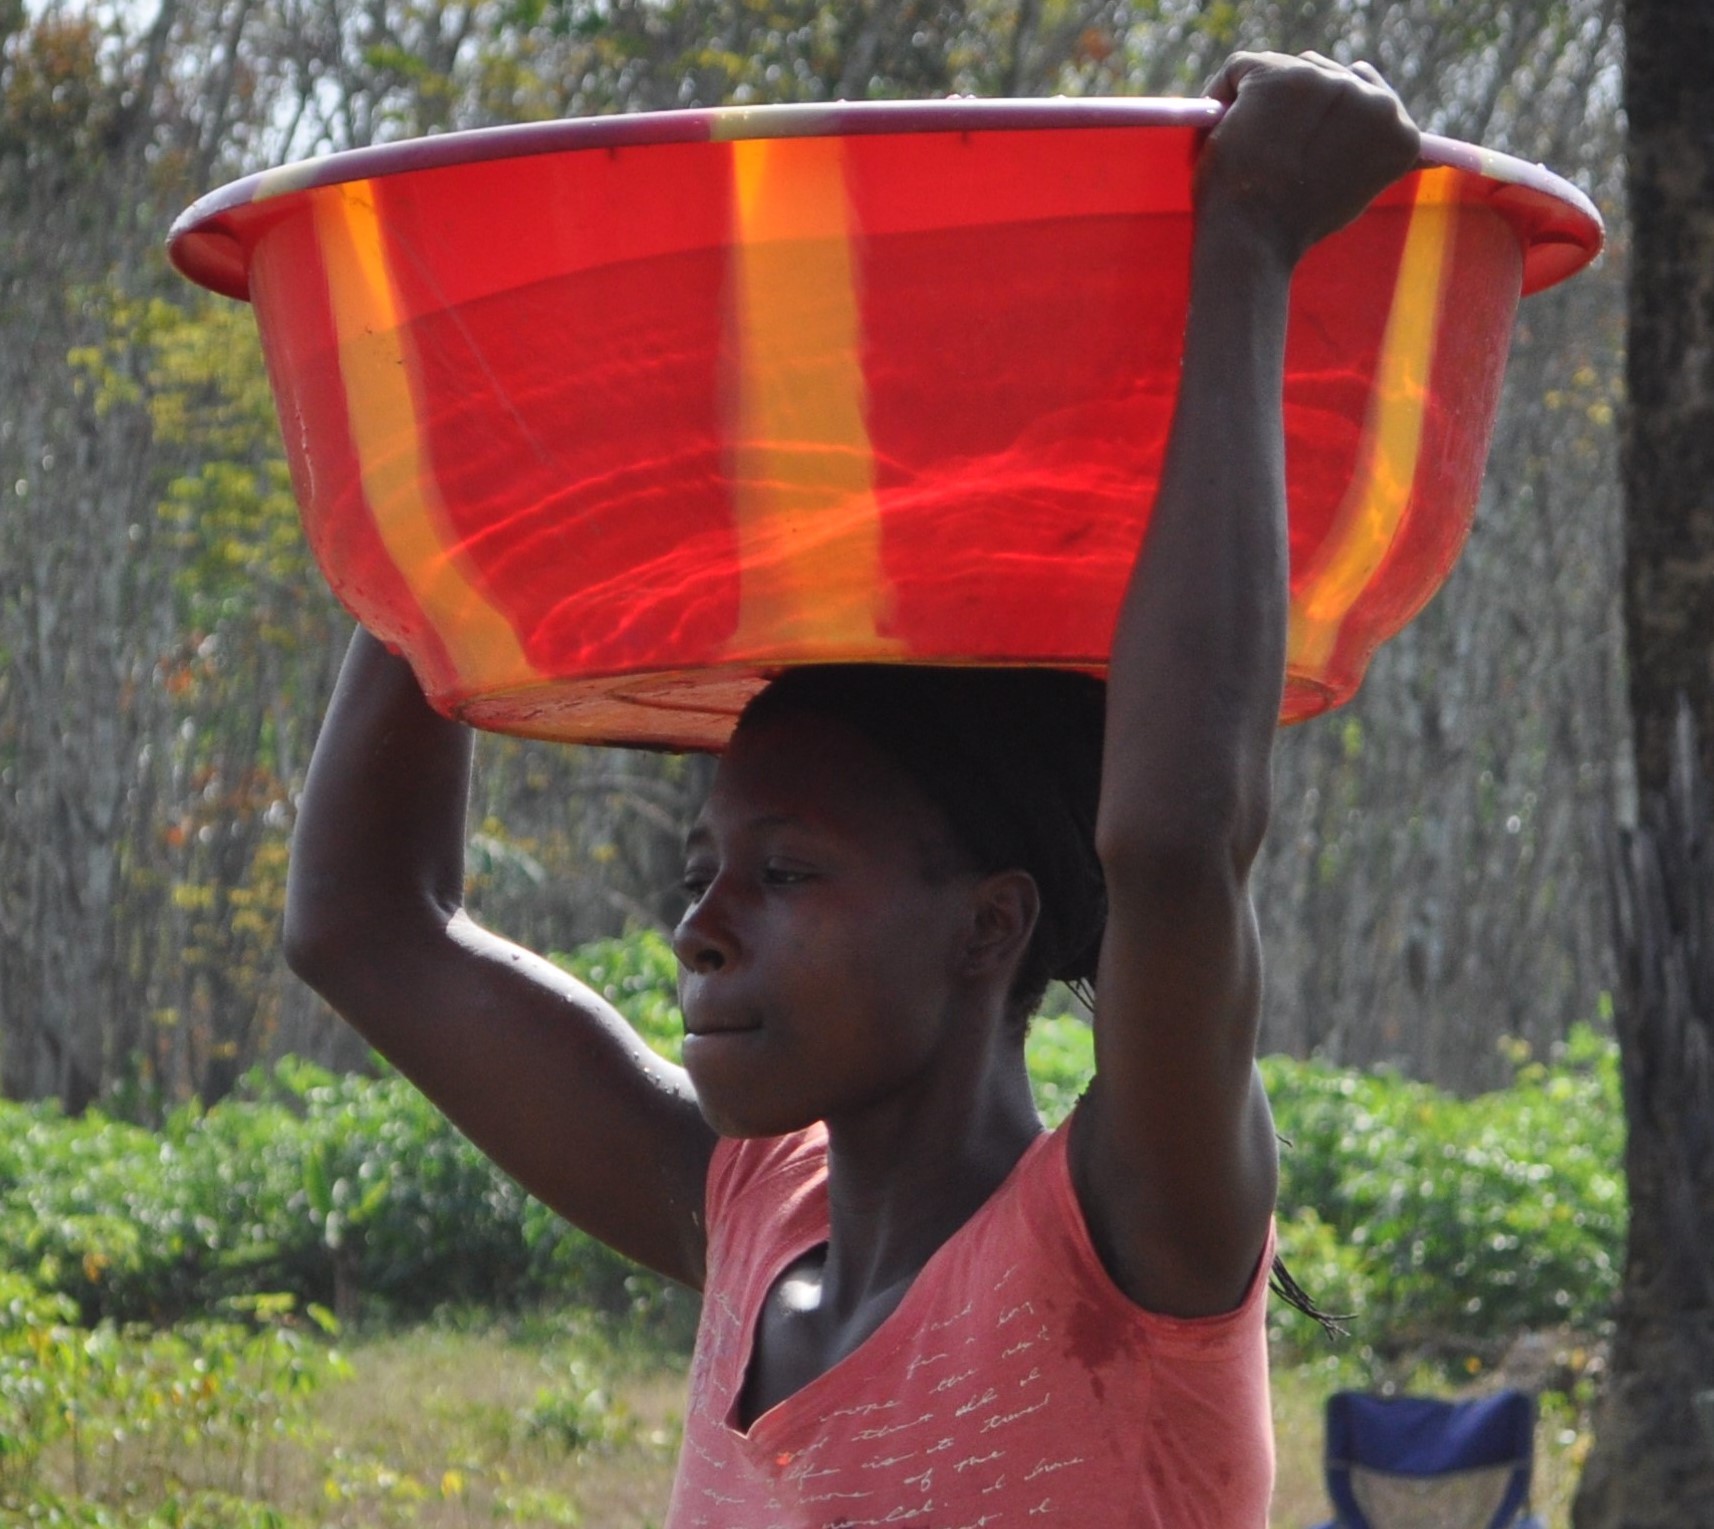 Photos - Women Carrying Water 1a.jpg 461 KB